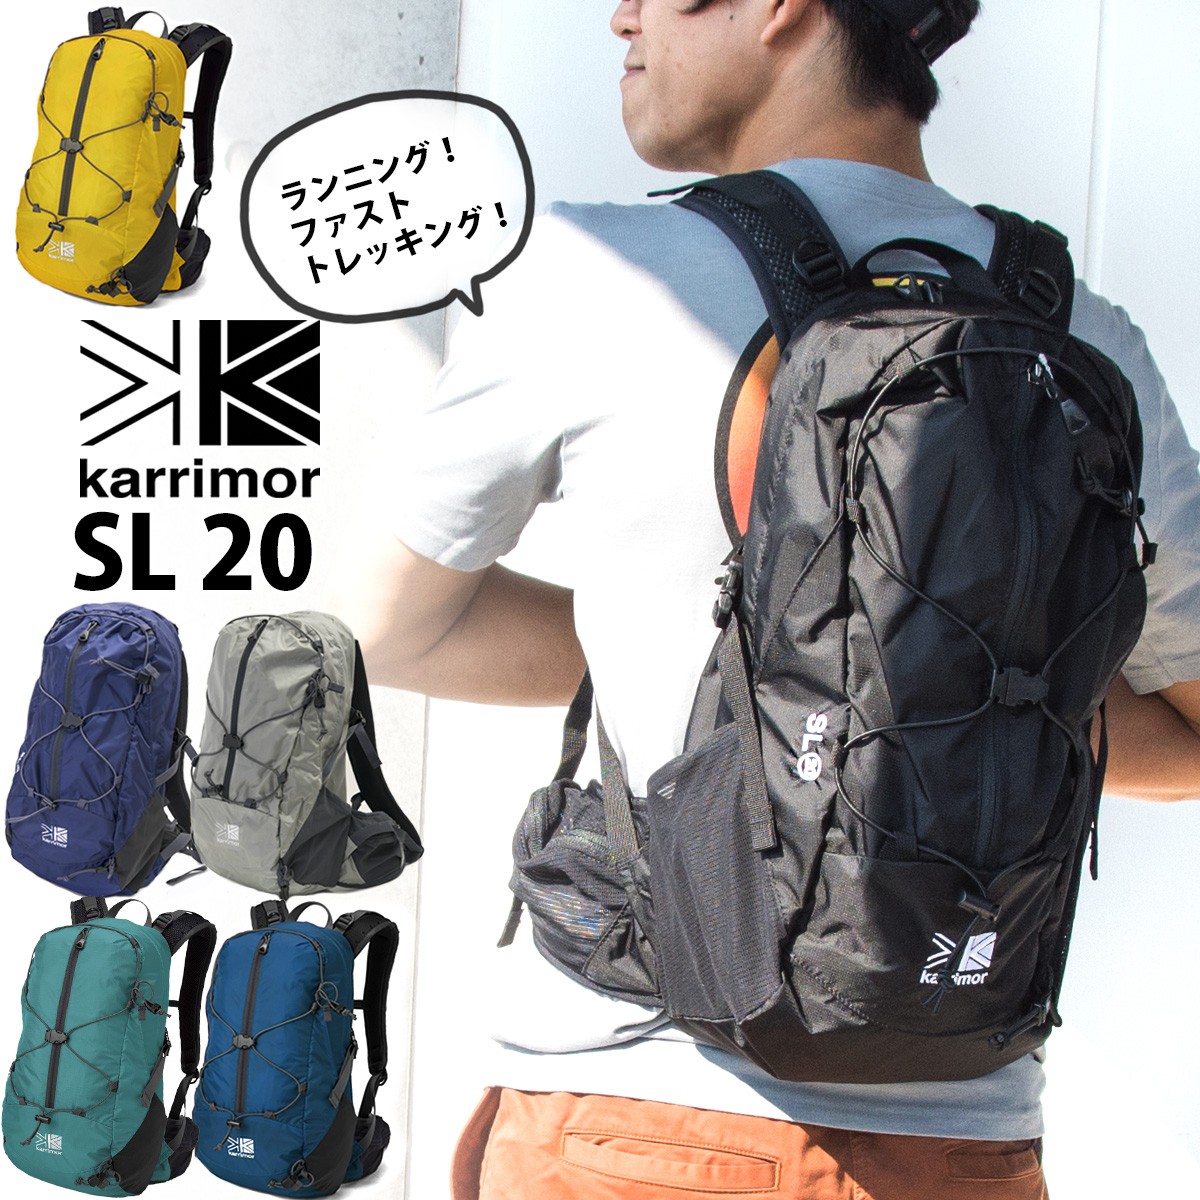 ランパック Karrimor カリマー SL 20 バックパック 20L :KR-120:2m50cm - 通販 - Yahoo!ショッピング